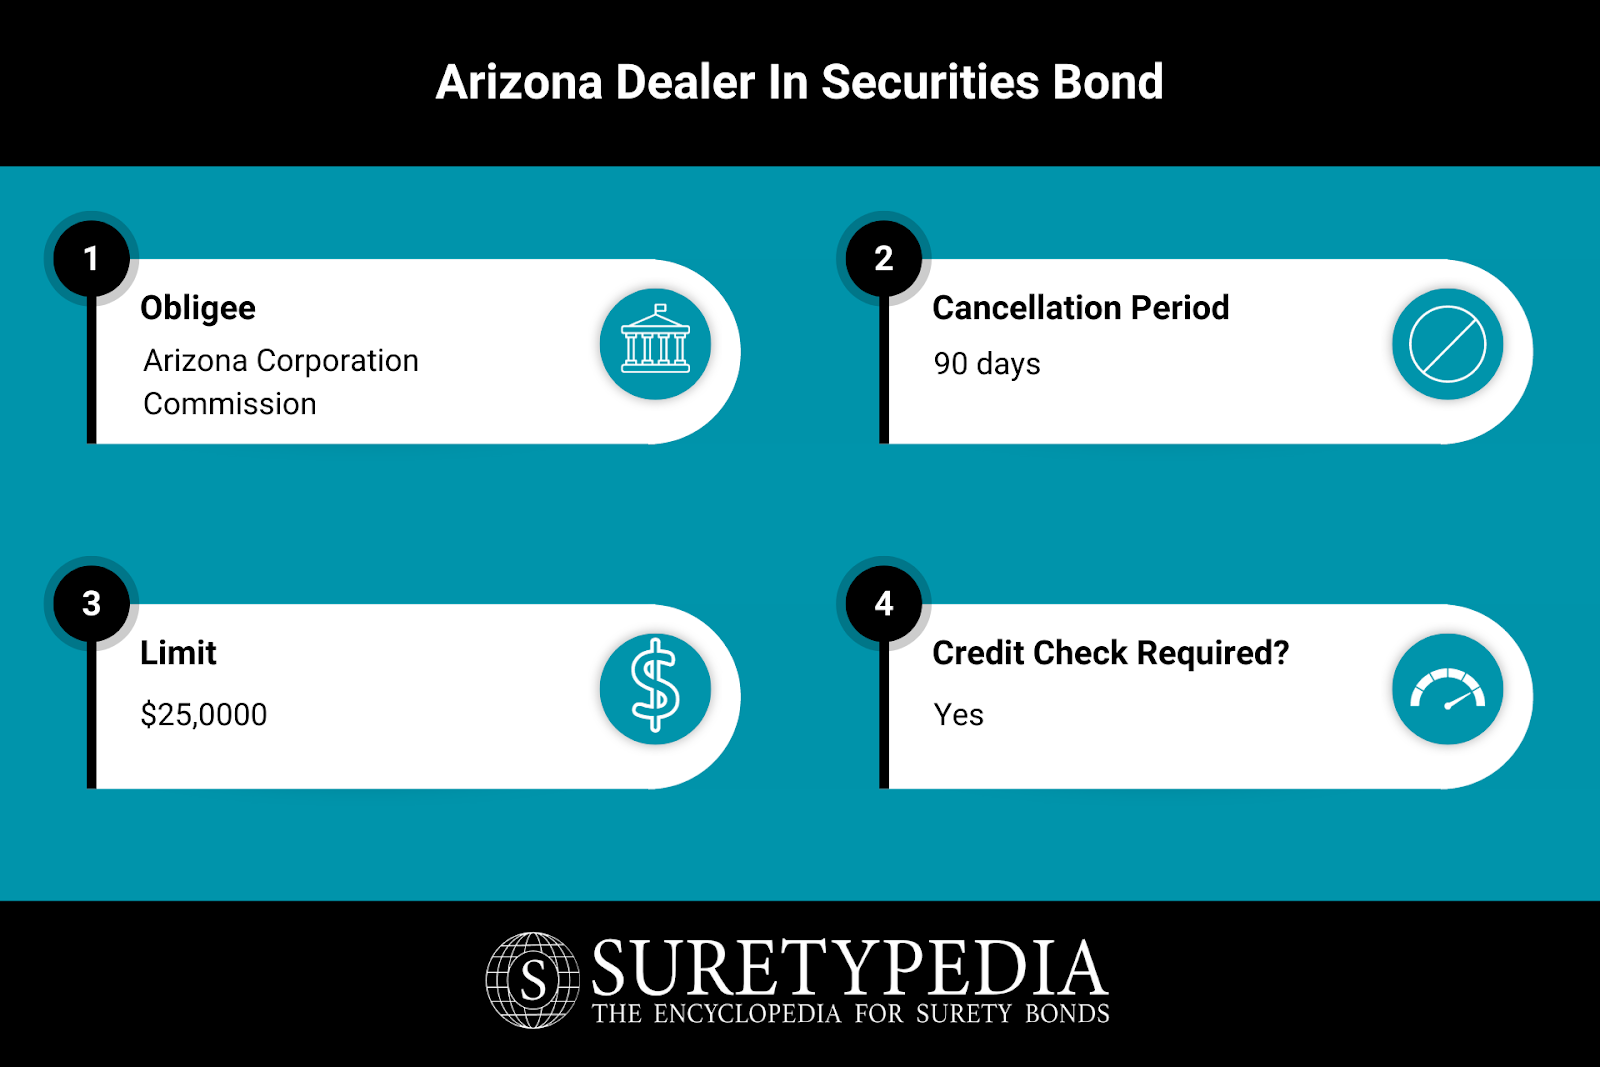 Arizona Dealer in Securities Bond